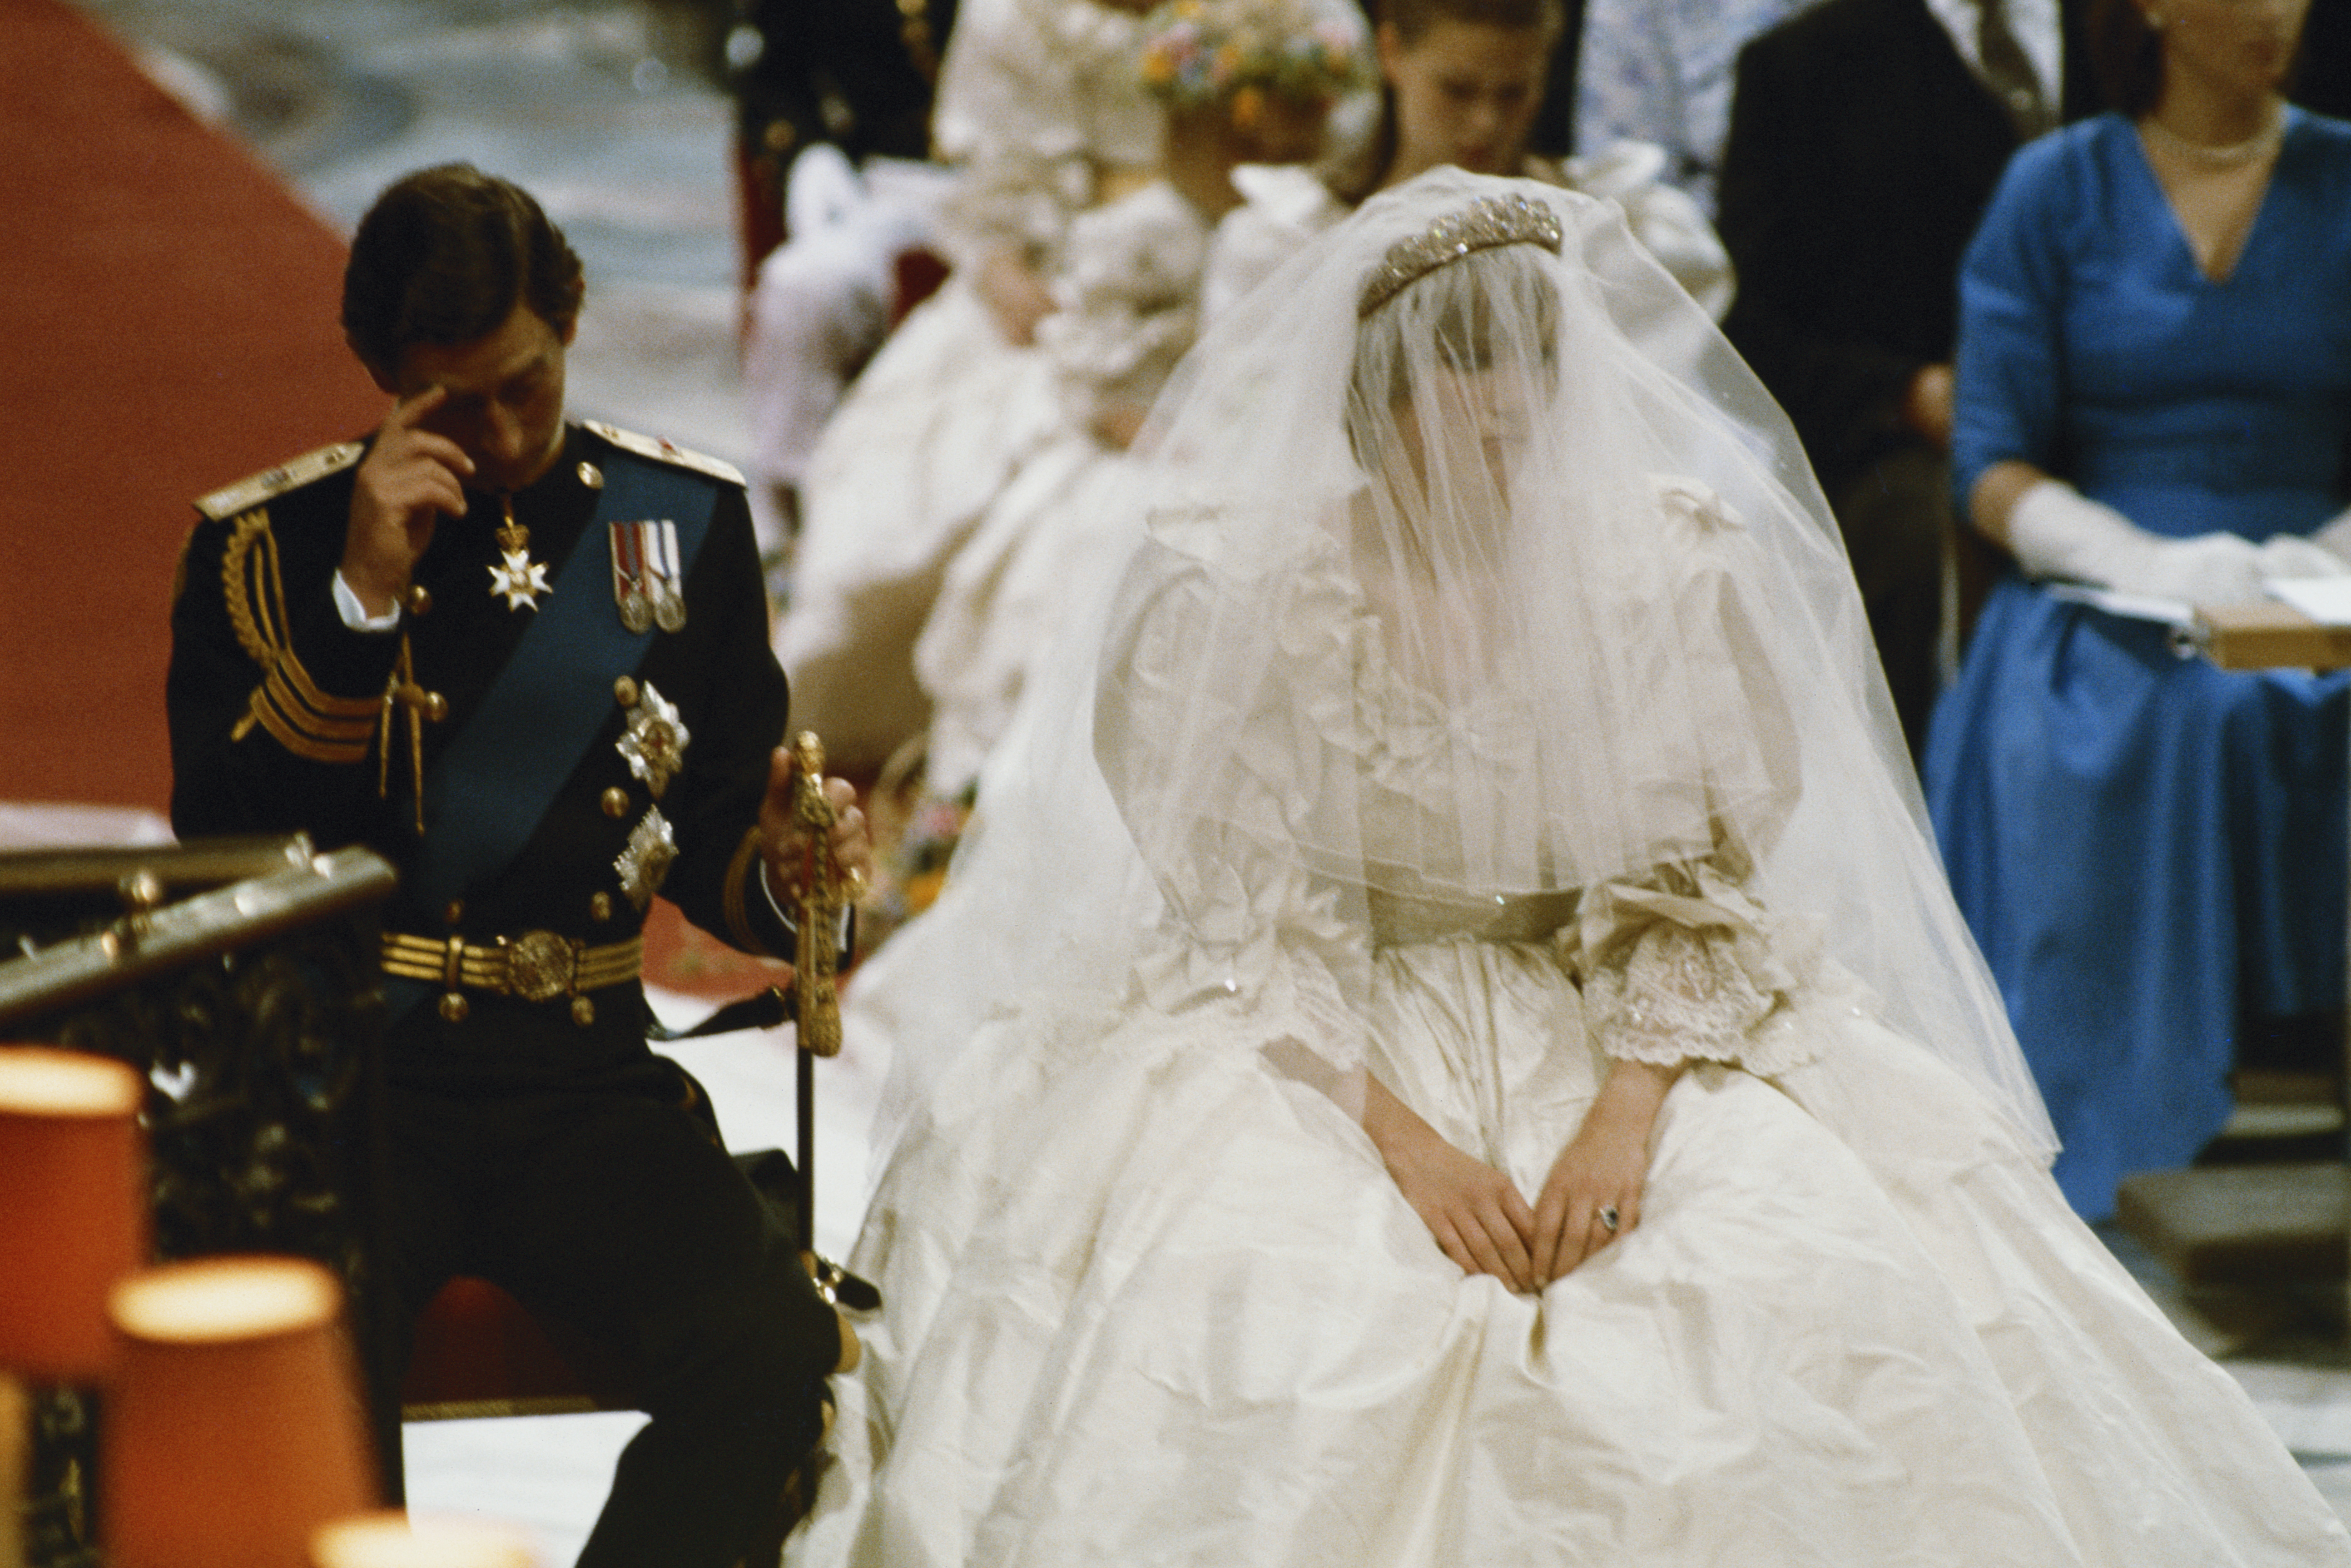 La noche antes de la boda Carlos le dijo a Lady Di que no la amaba (Getty Images)